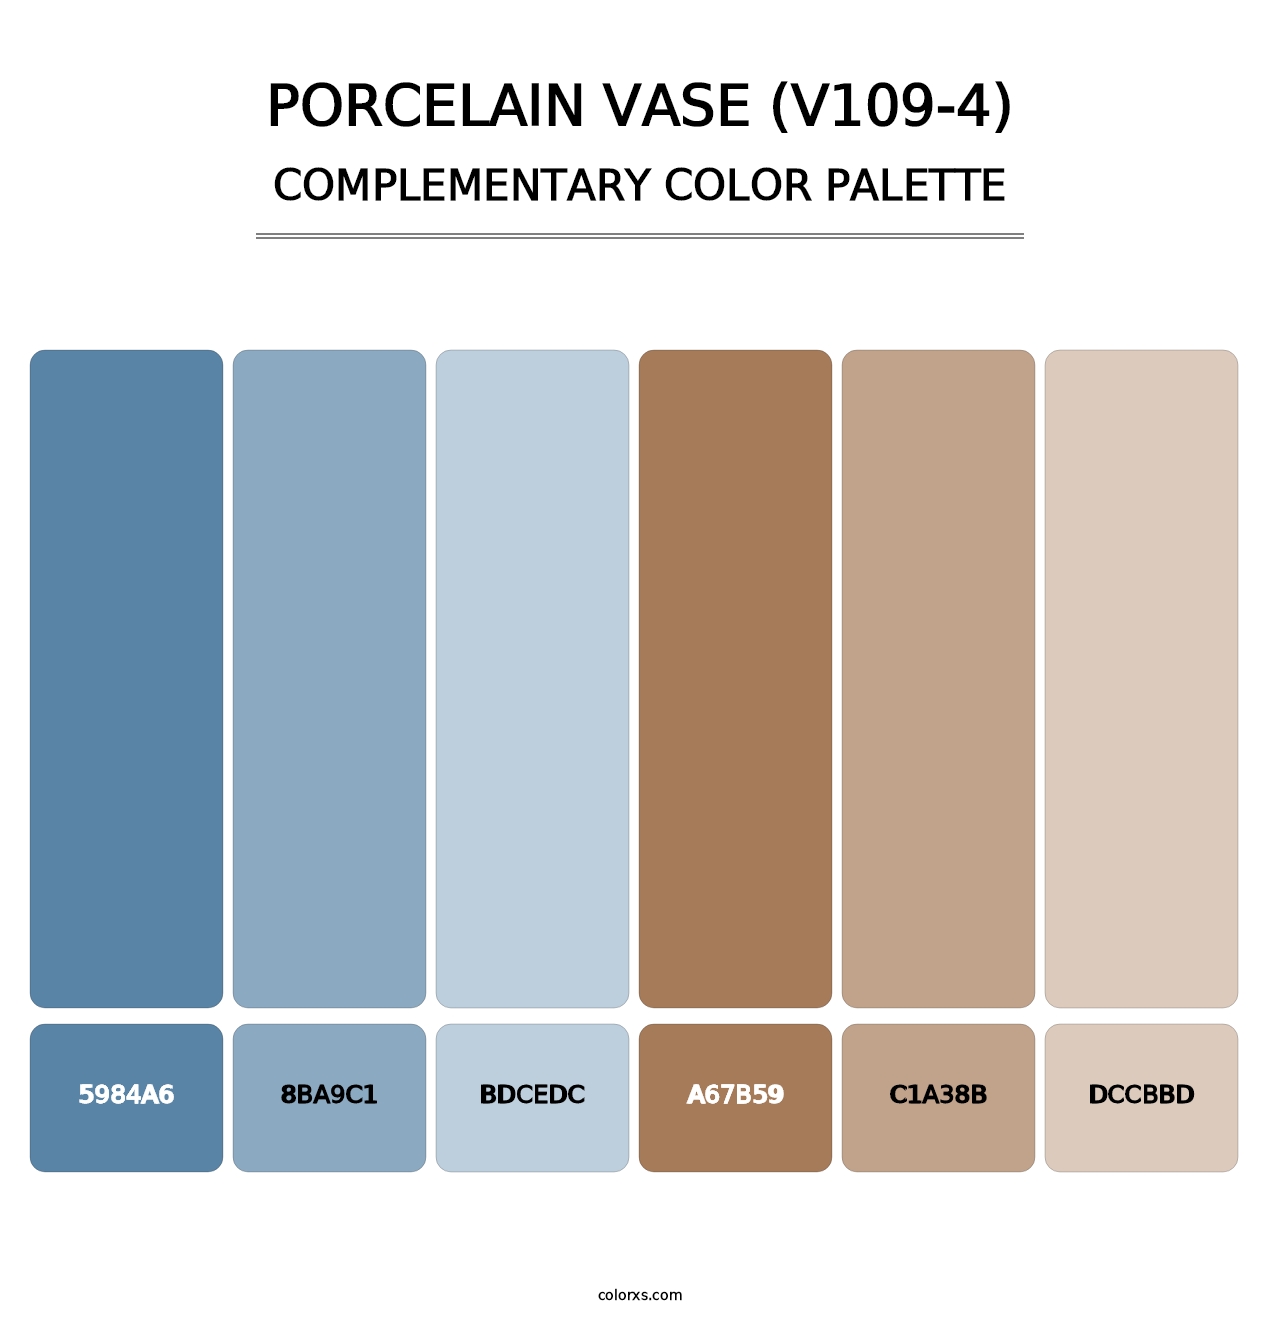 Porcelain Vase (V109-4) - Complementary Color Palette